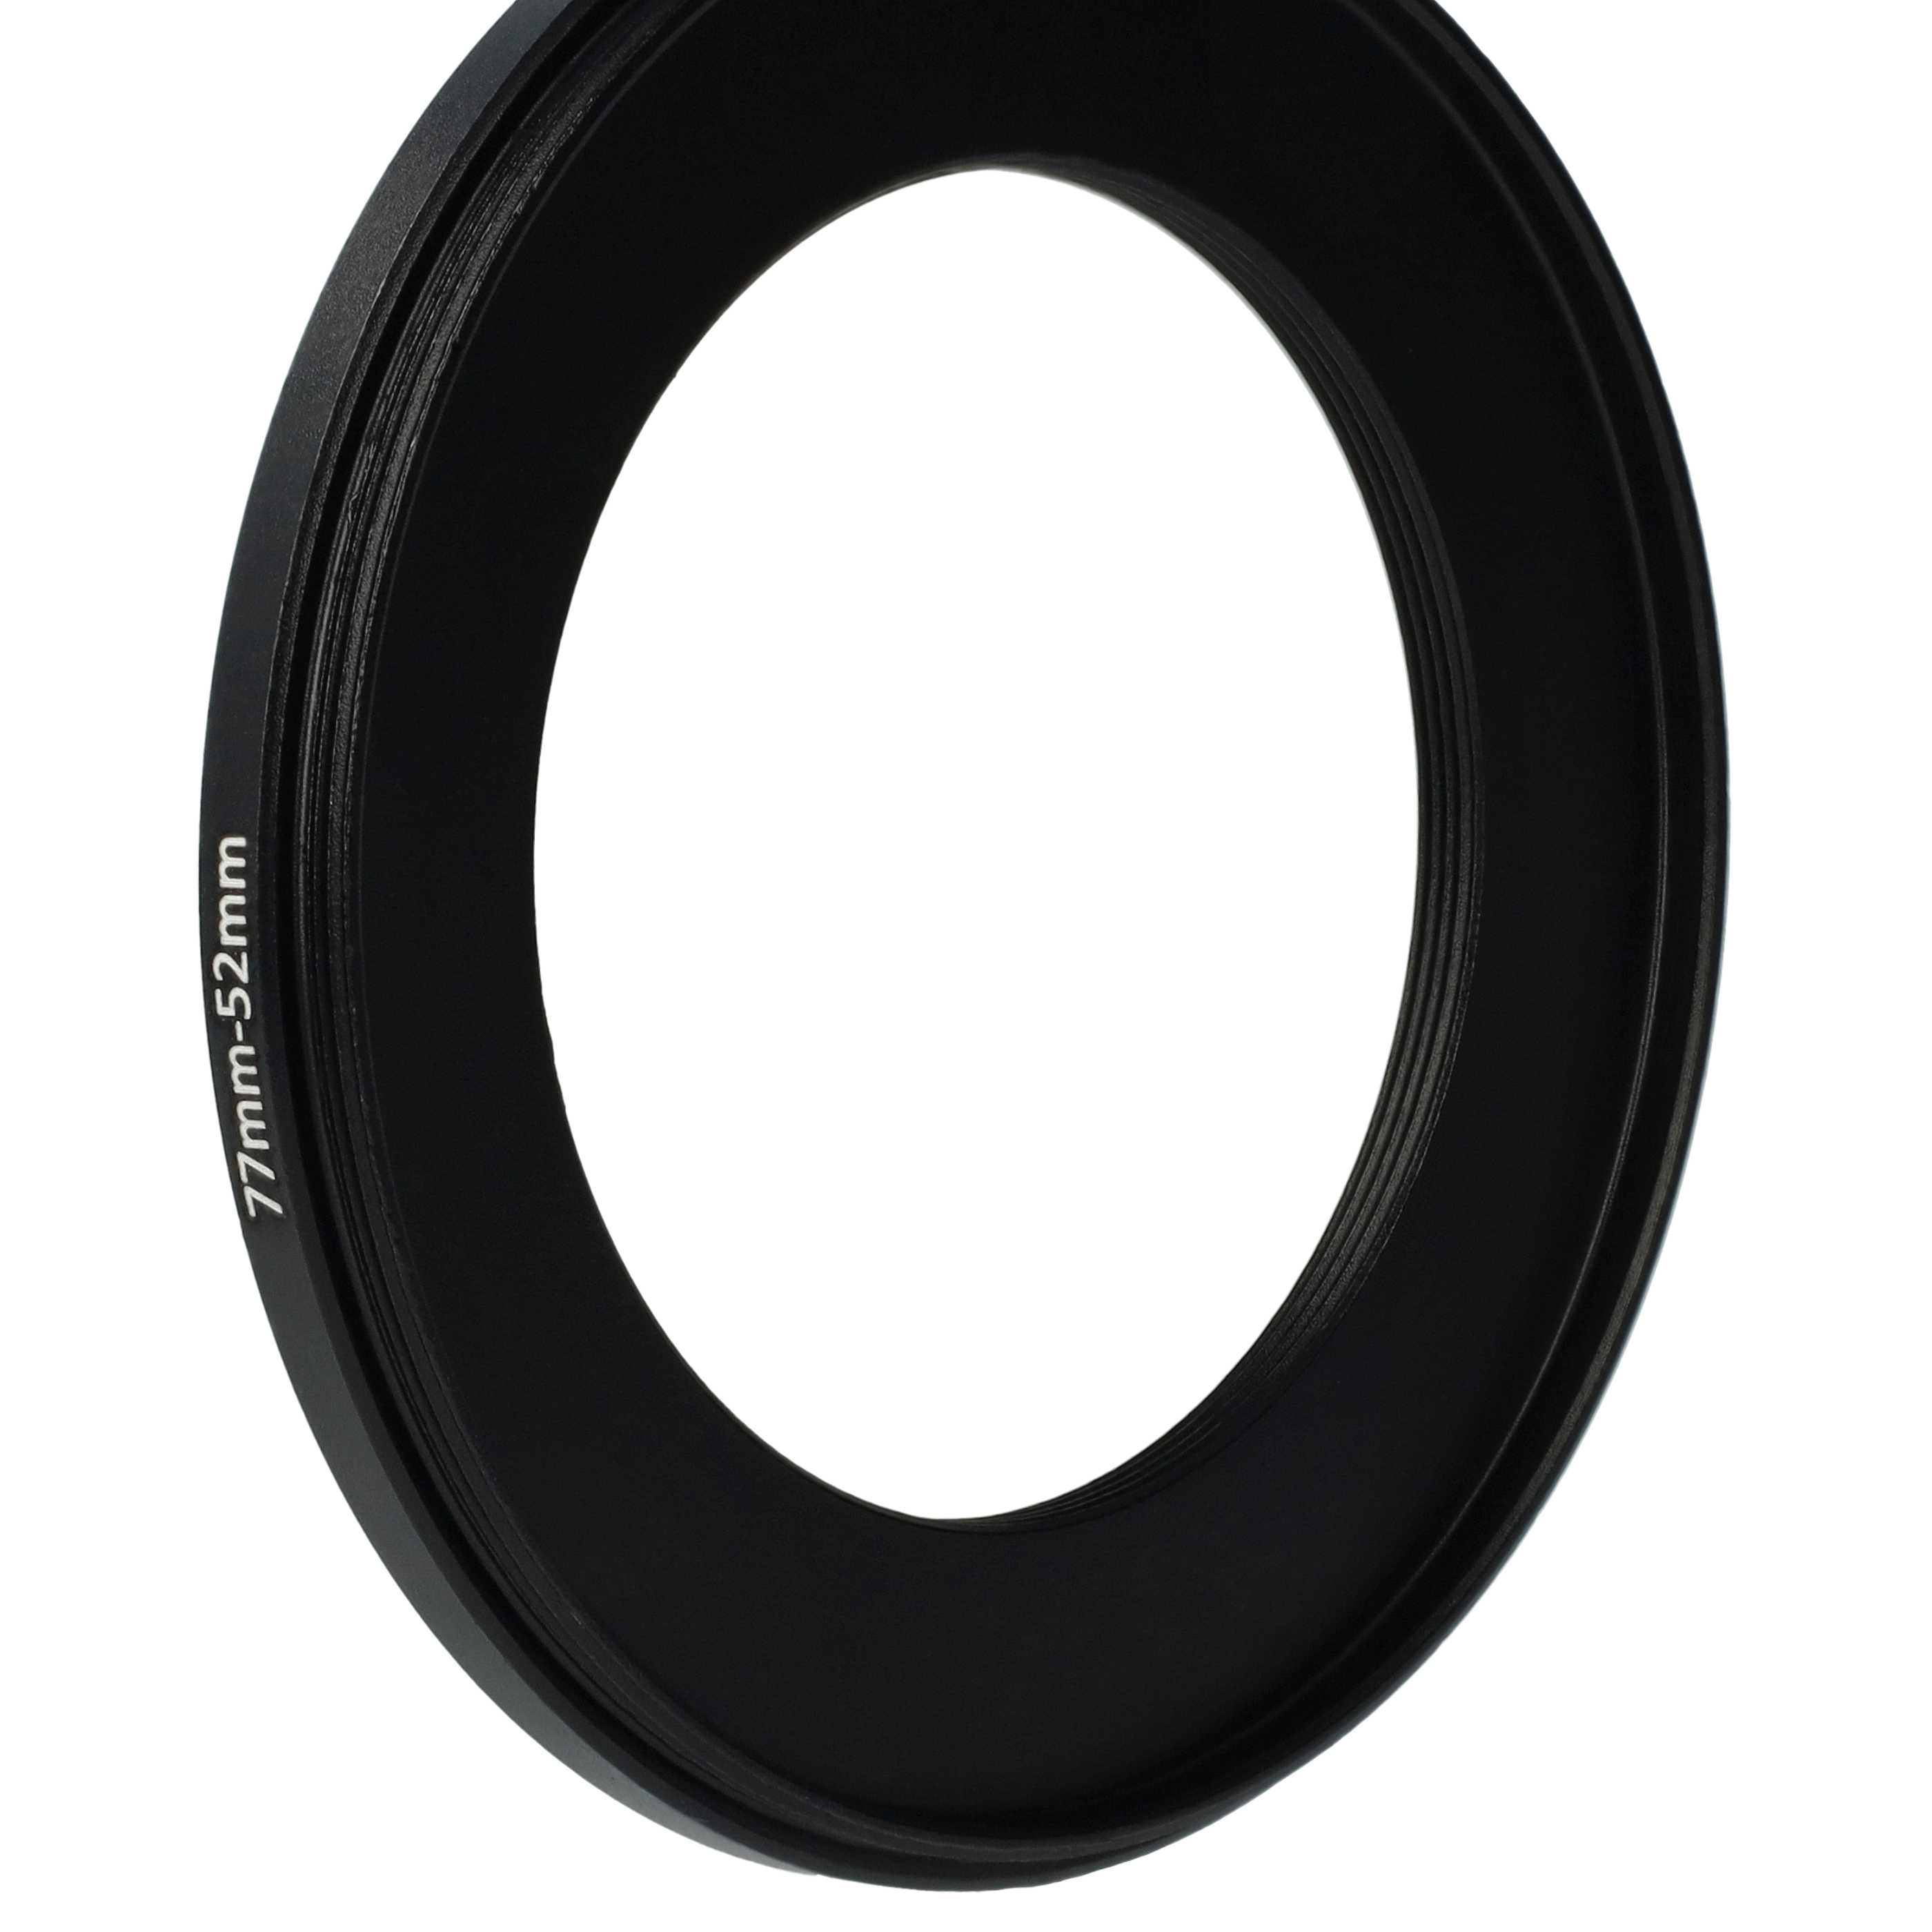 Anillo adaptador Step Down de 77 mm a 52 mm para objetivo de la cámara - Adaptador de filtro, metal, negro